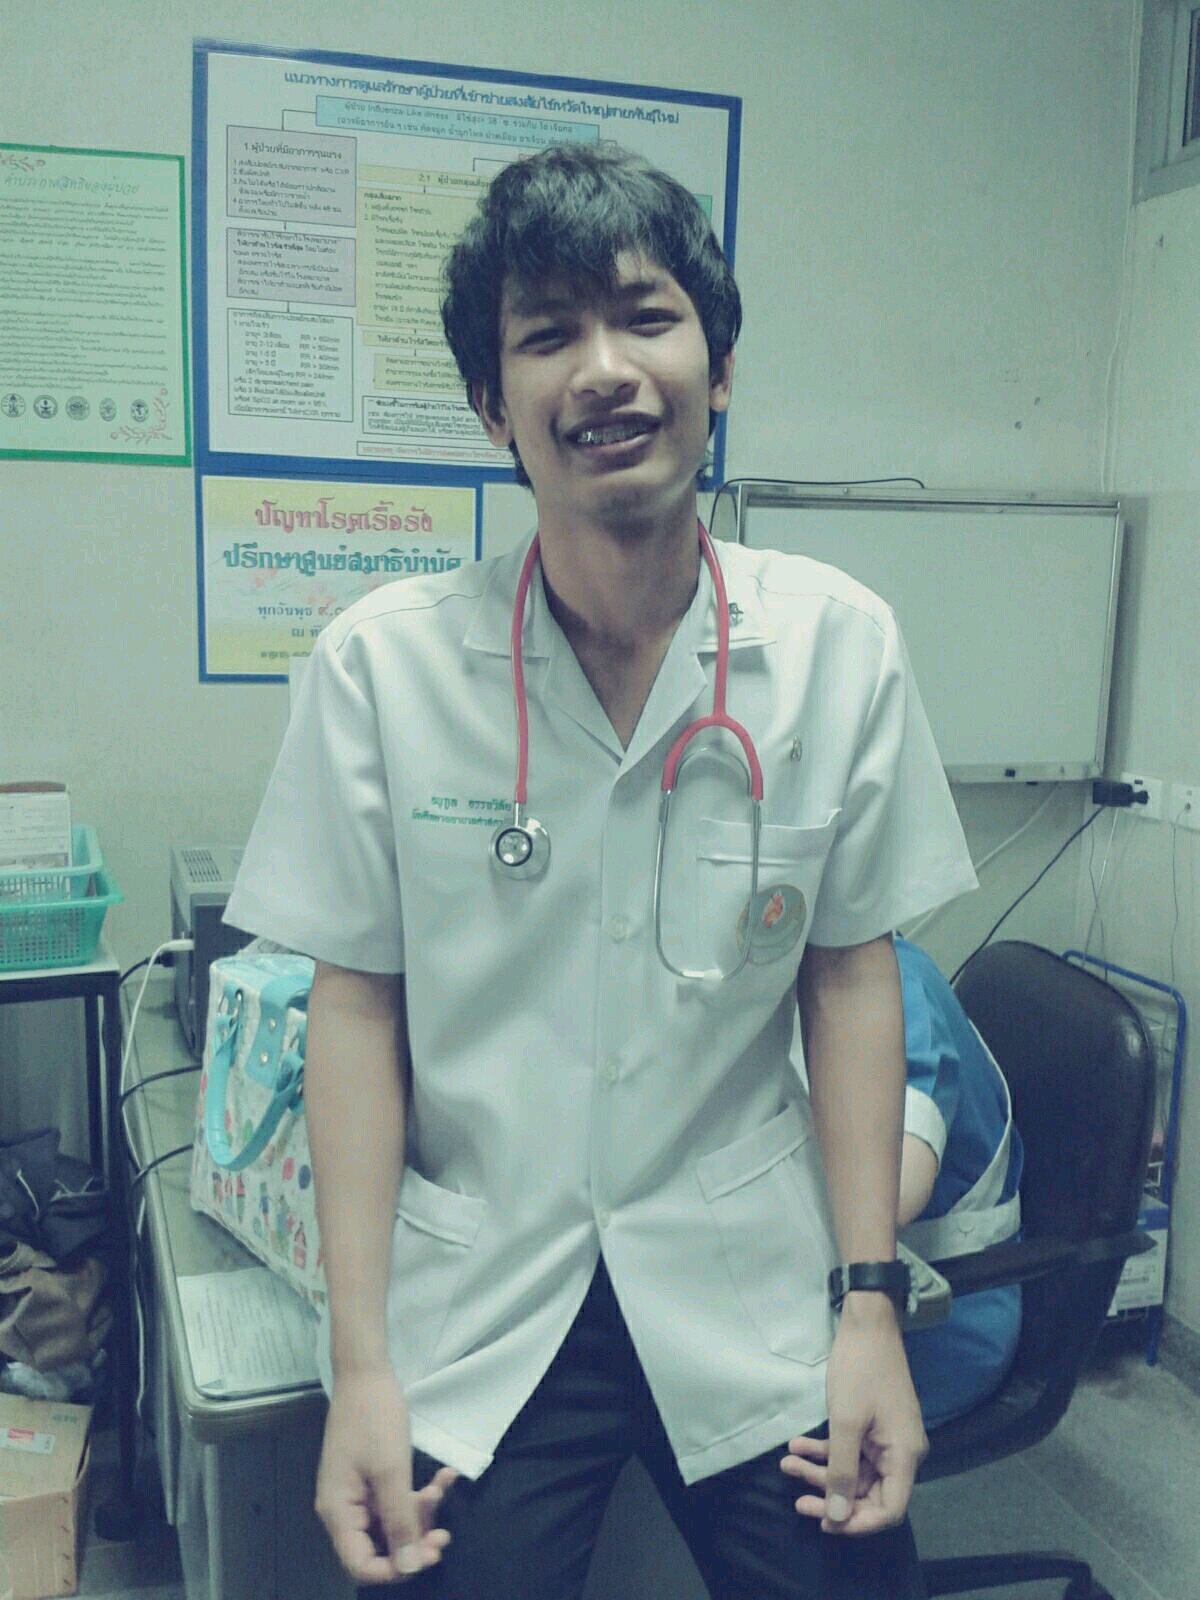 I'm Nick, Nurse of kuchinarai crown prince hospital